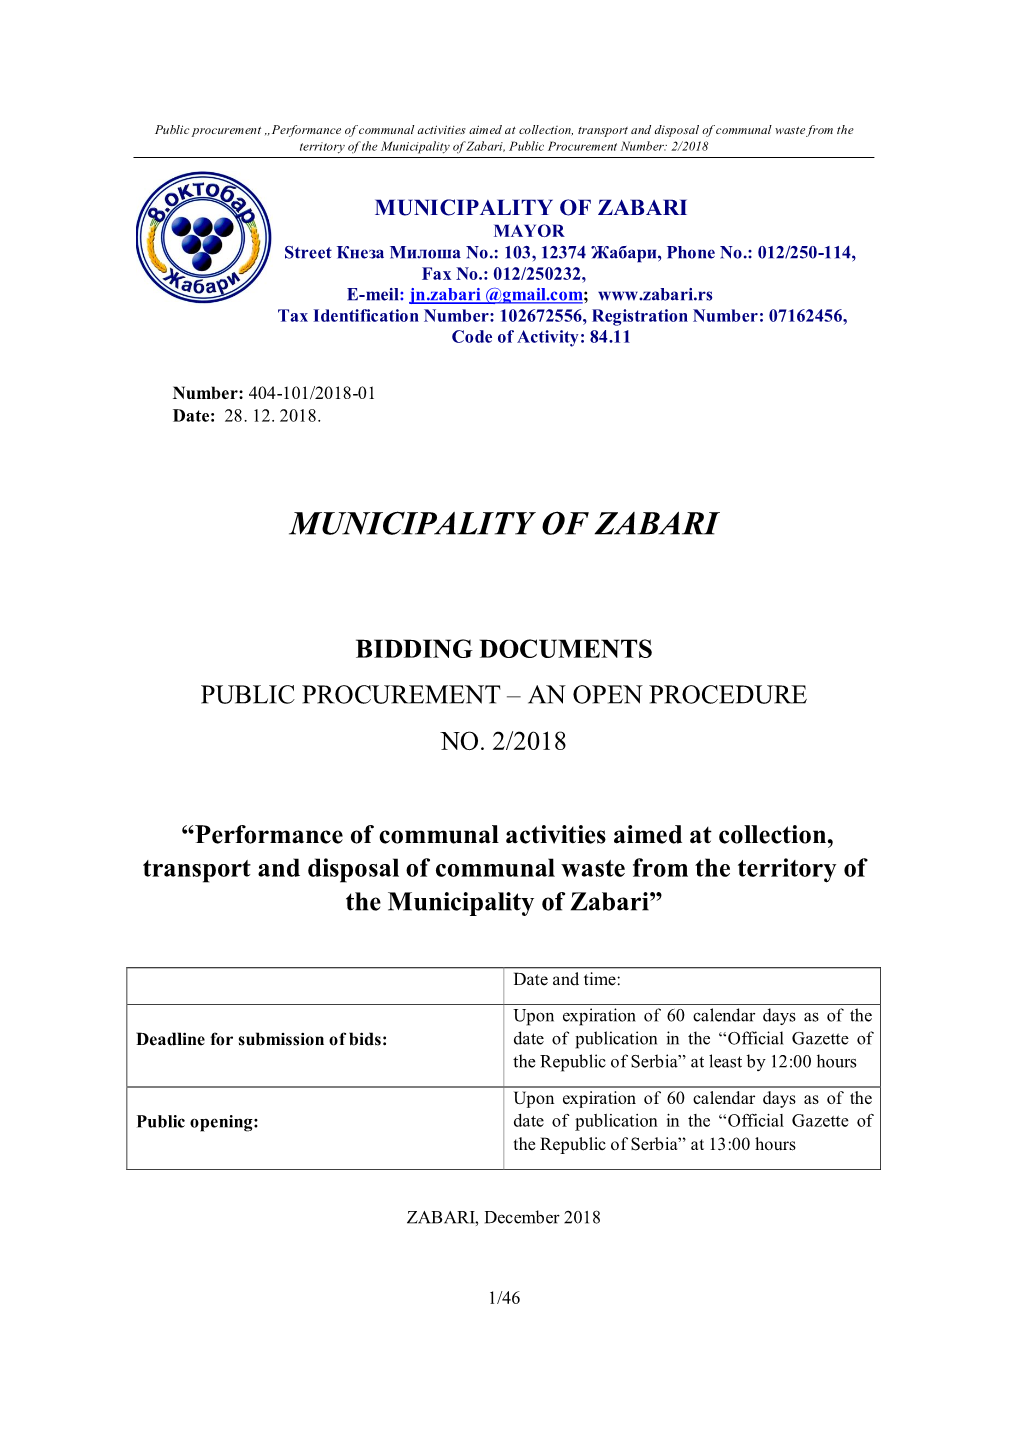 Municipality of Zabari Bidding Documents